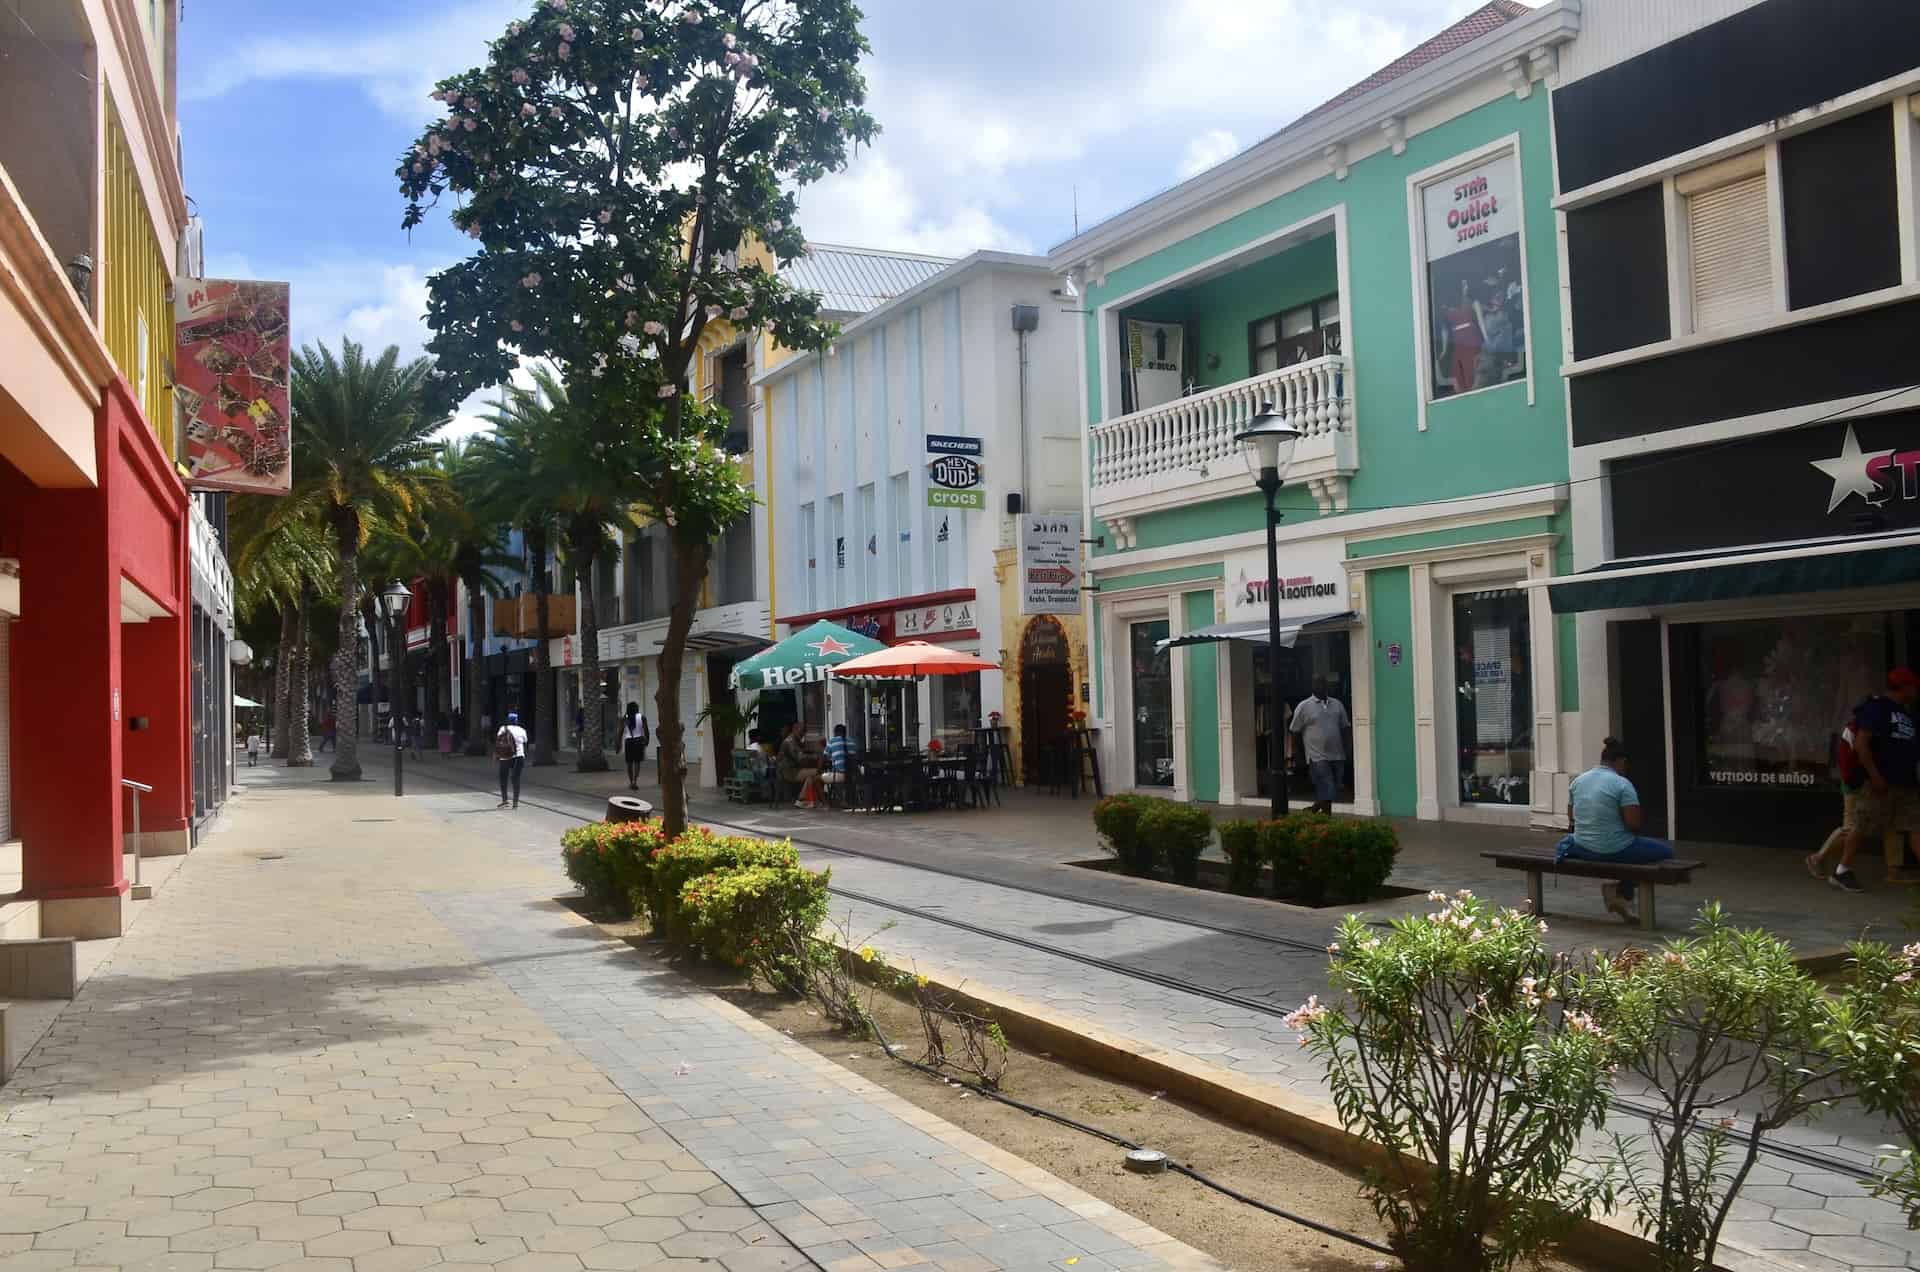 Stores on Main Street in Oranjestad, Aruba